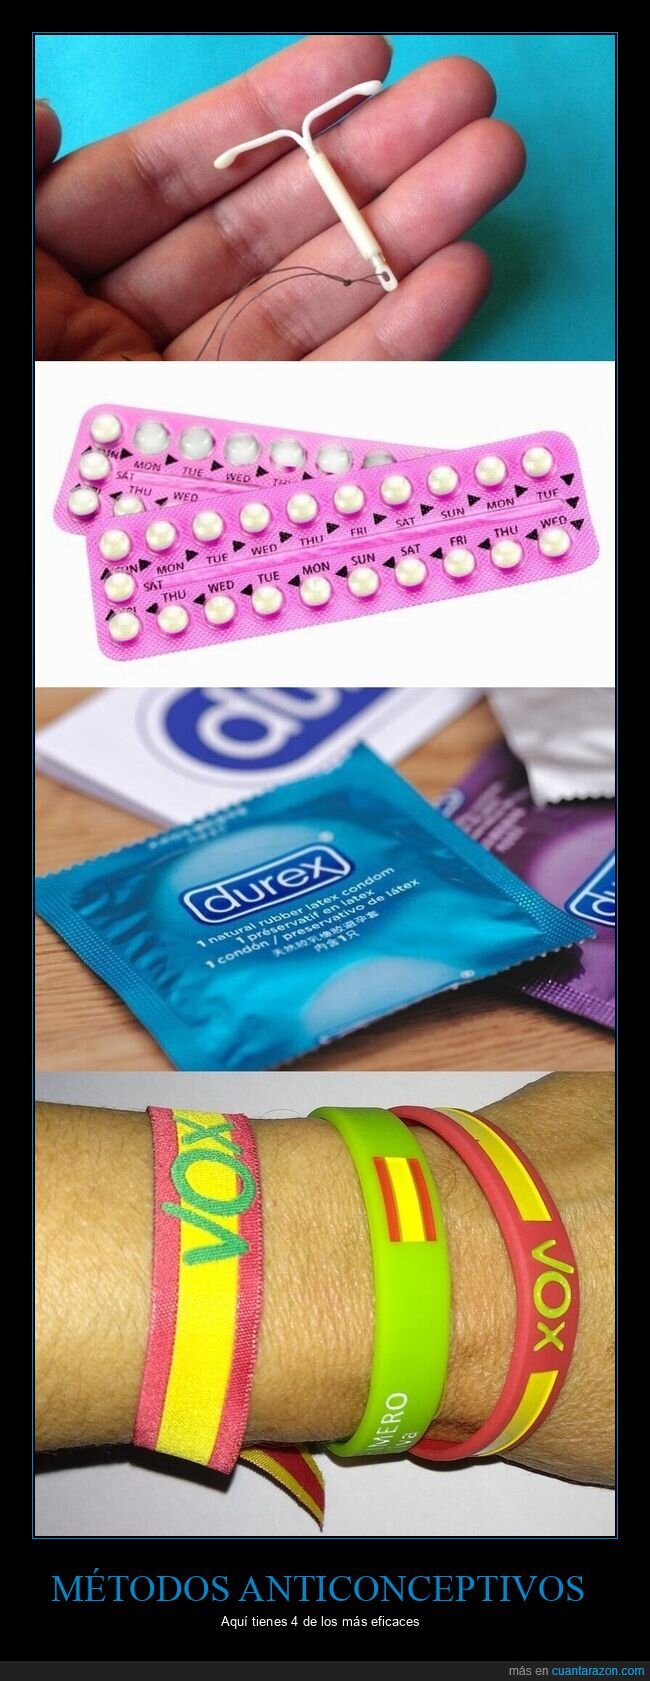 pulsera,vox,condones,anticonceptivos